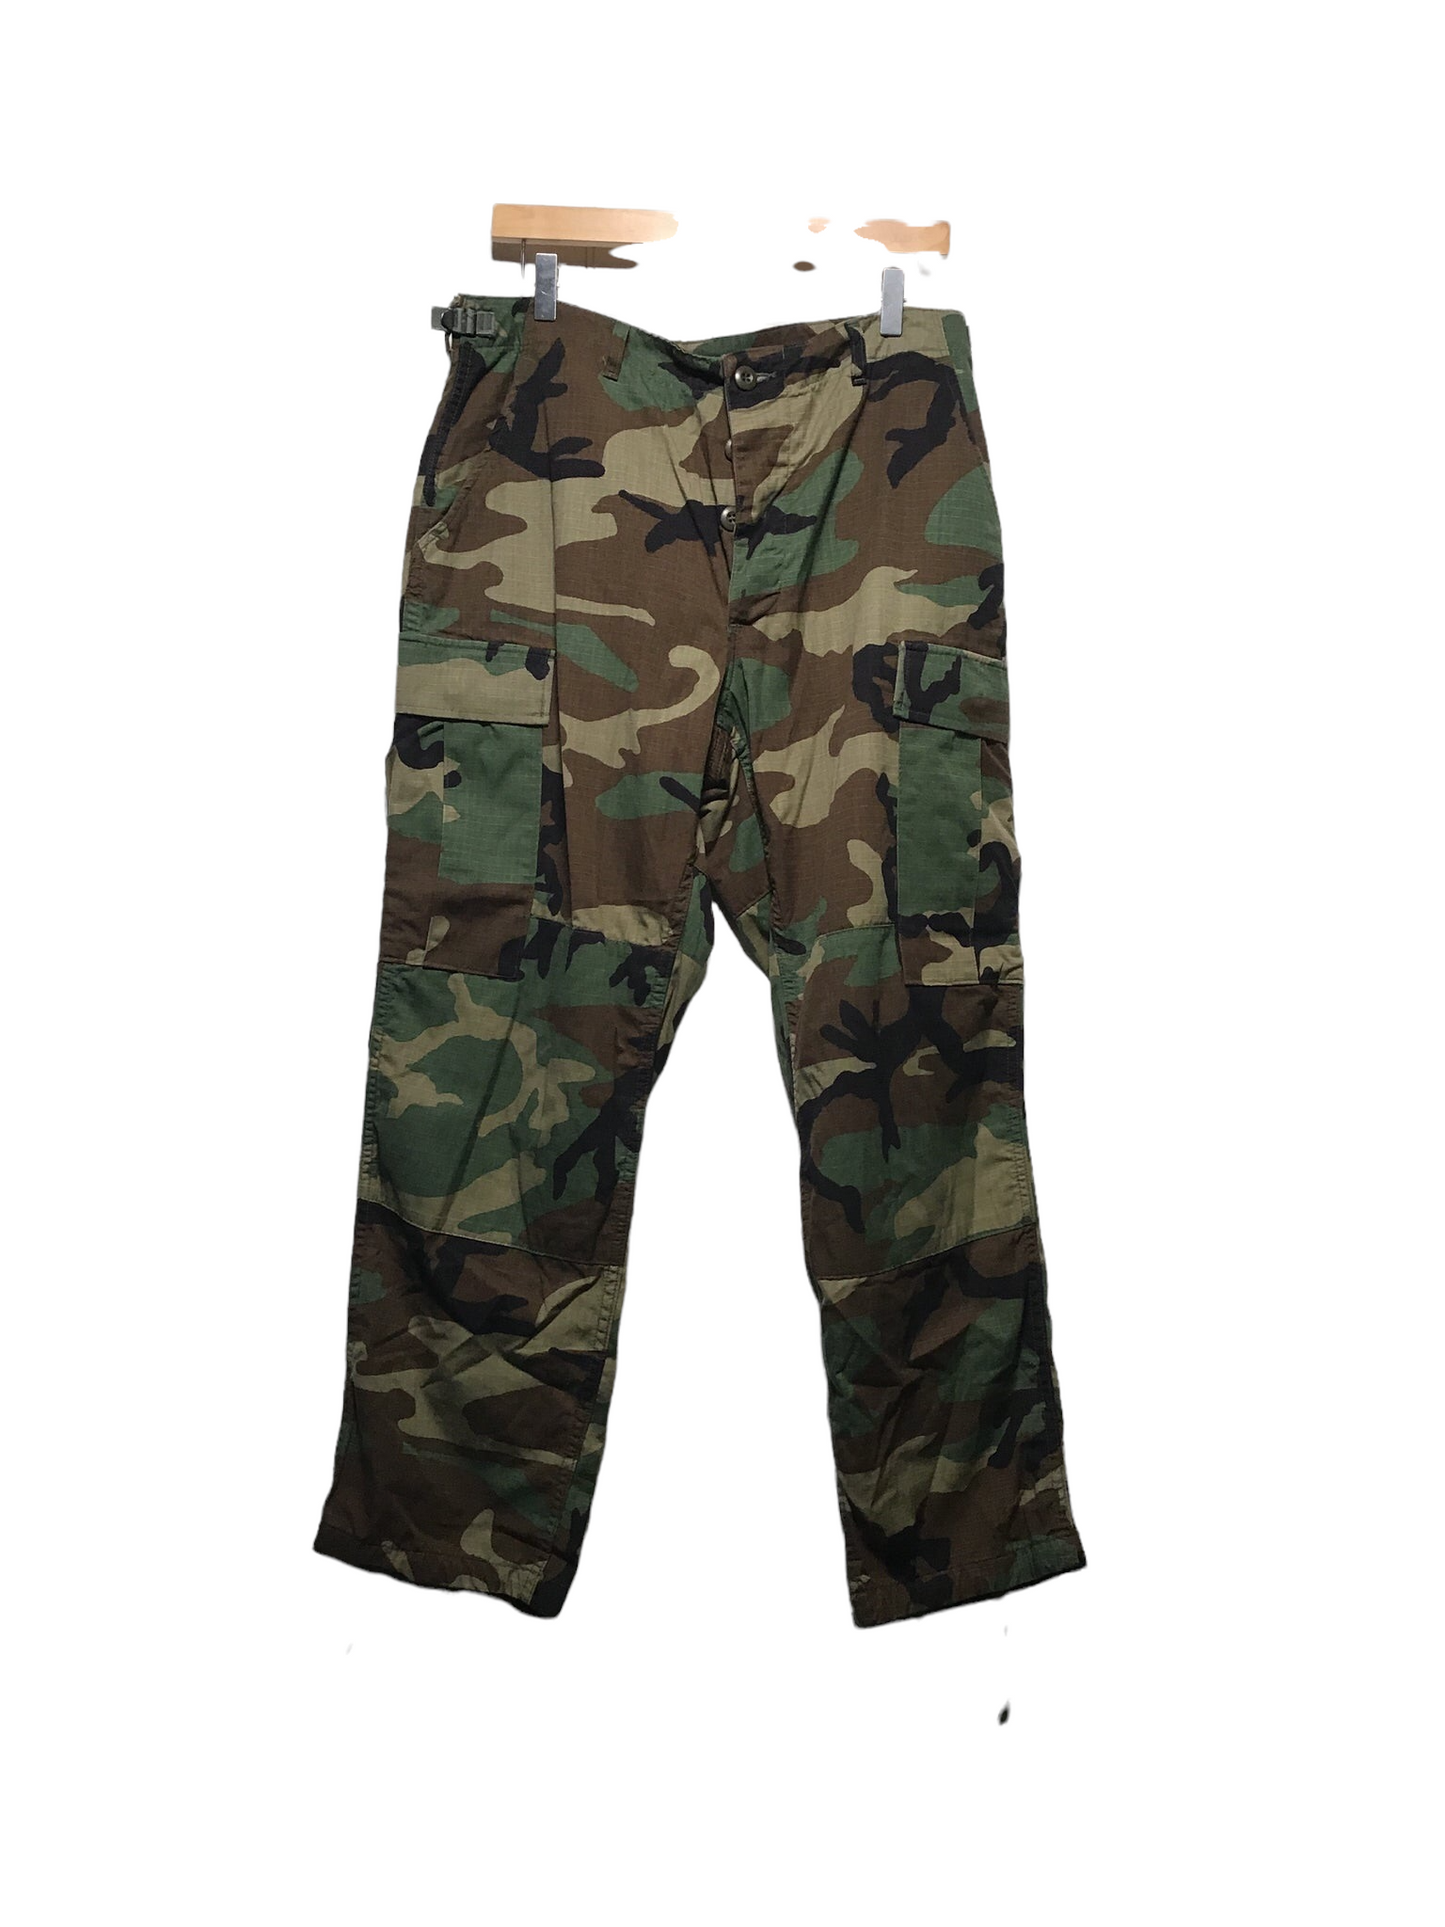 Army Pants (32X27)